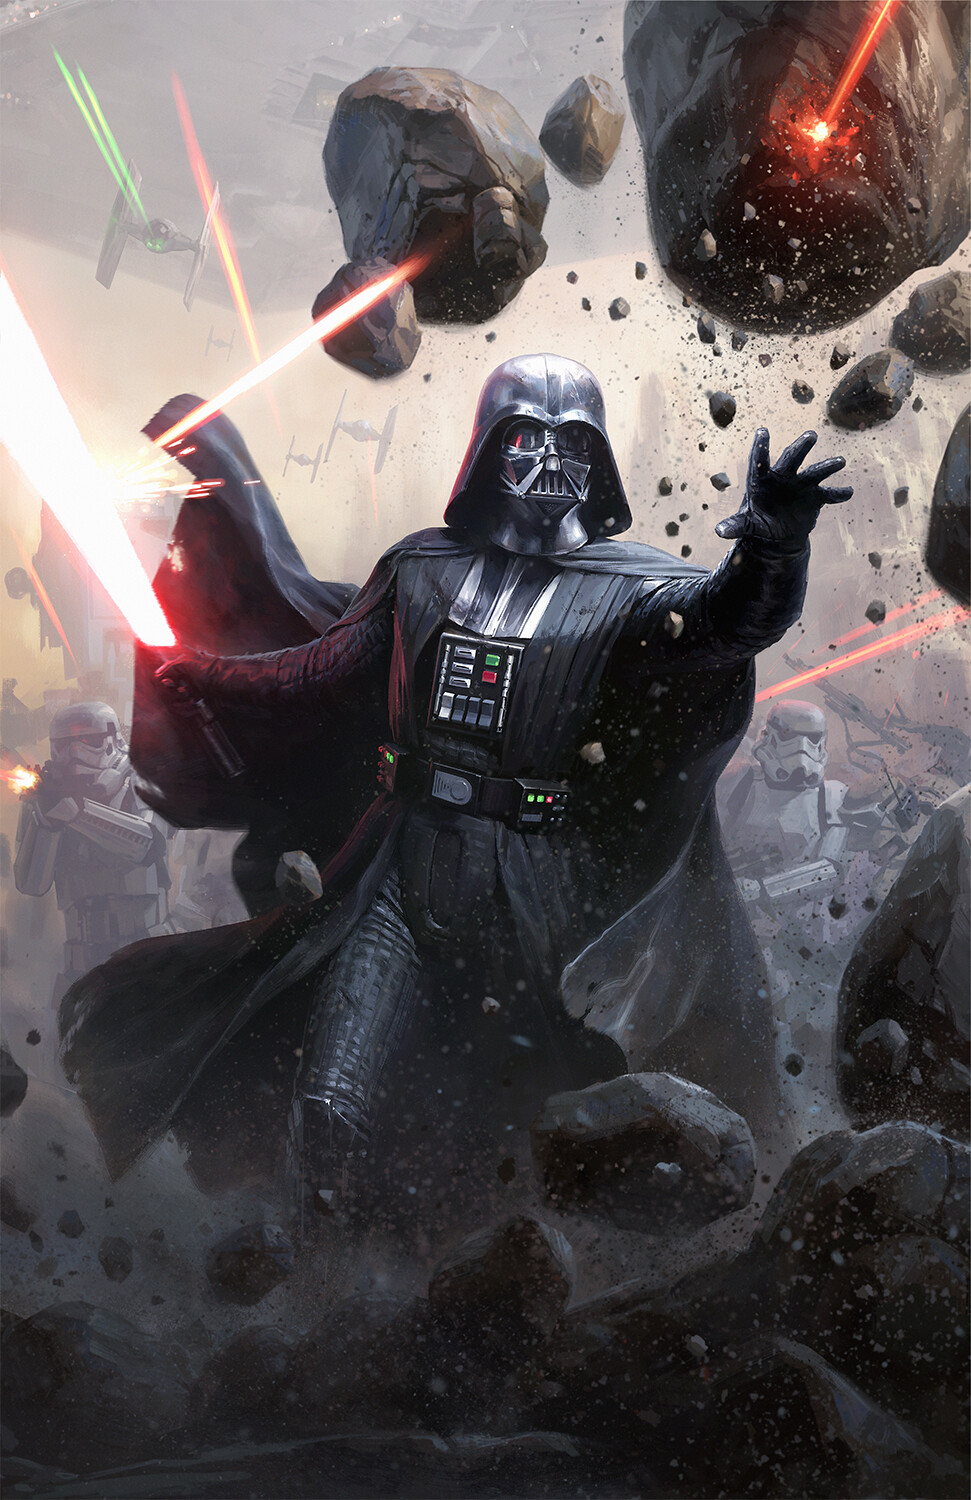 Star Wars Sith Darth Vader Science Fiction Artwork Star Wars Villains ArtStation Darren Tan 971x1500